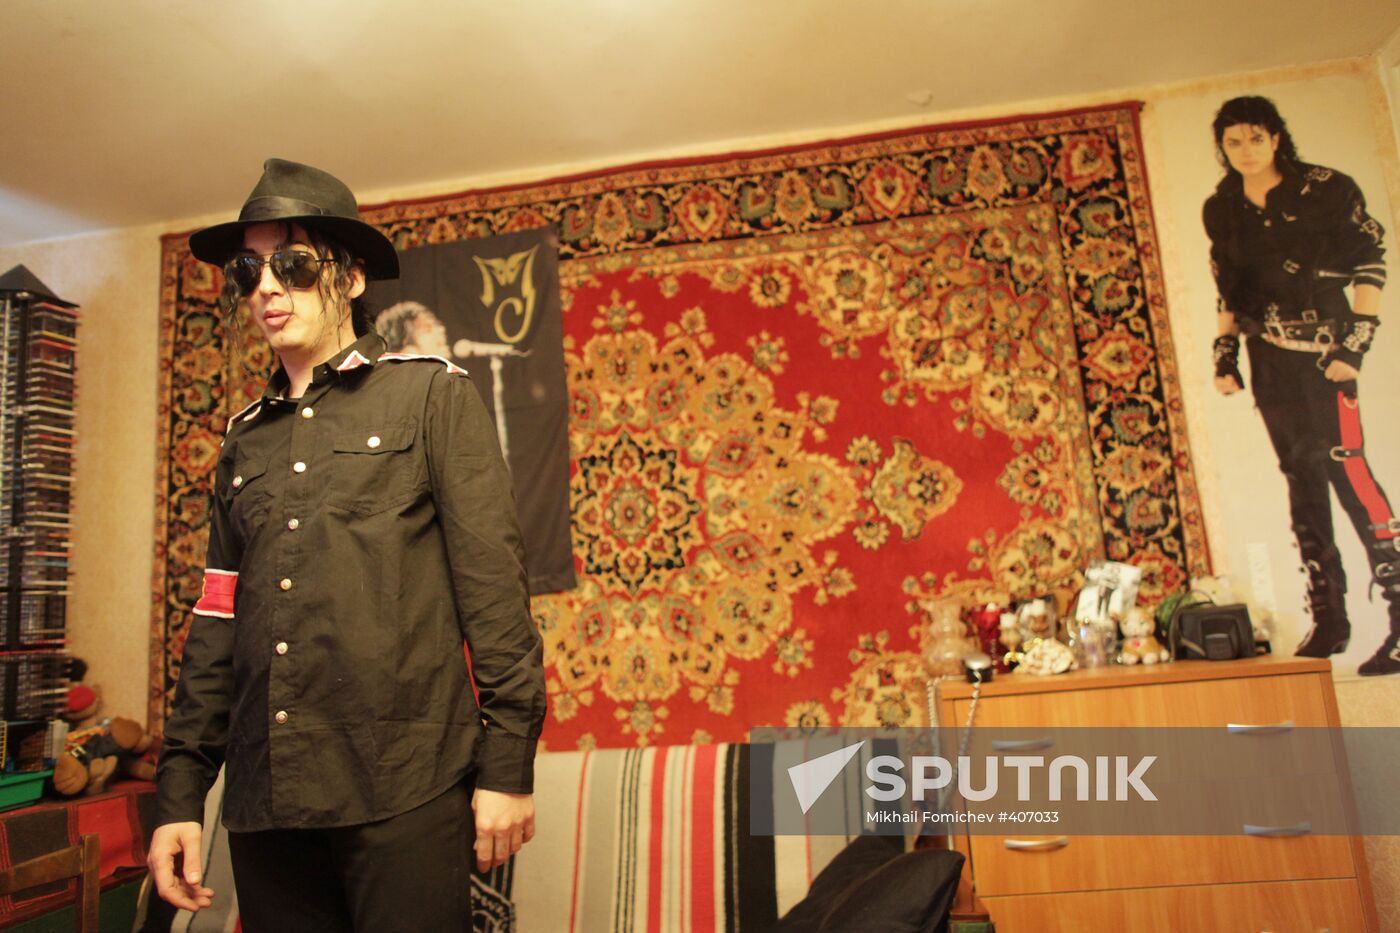 Michael Jackson's look-alike